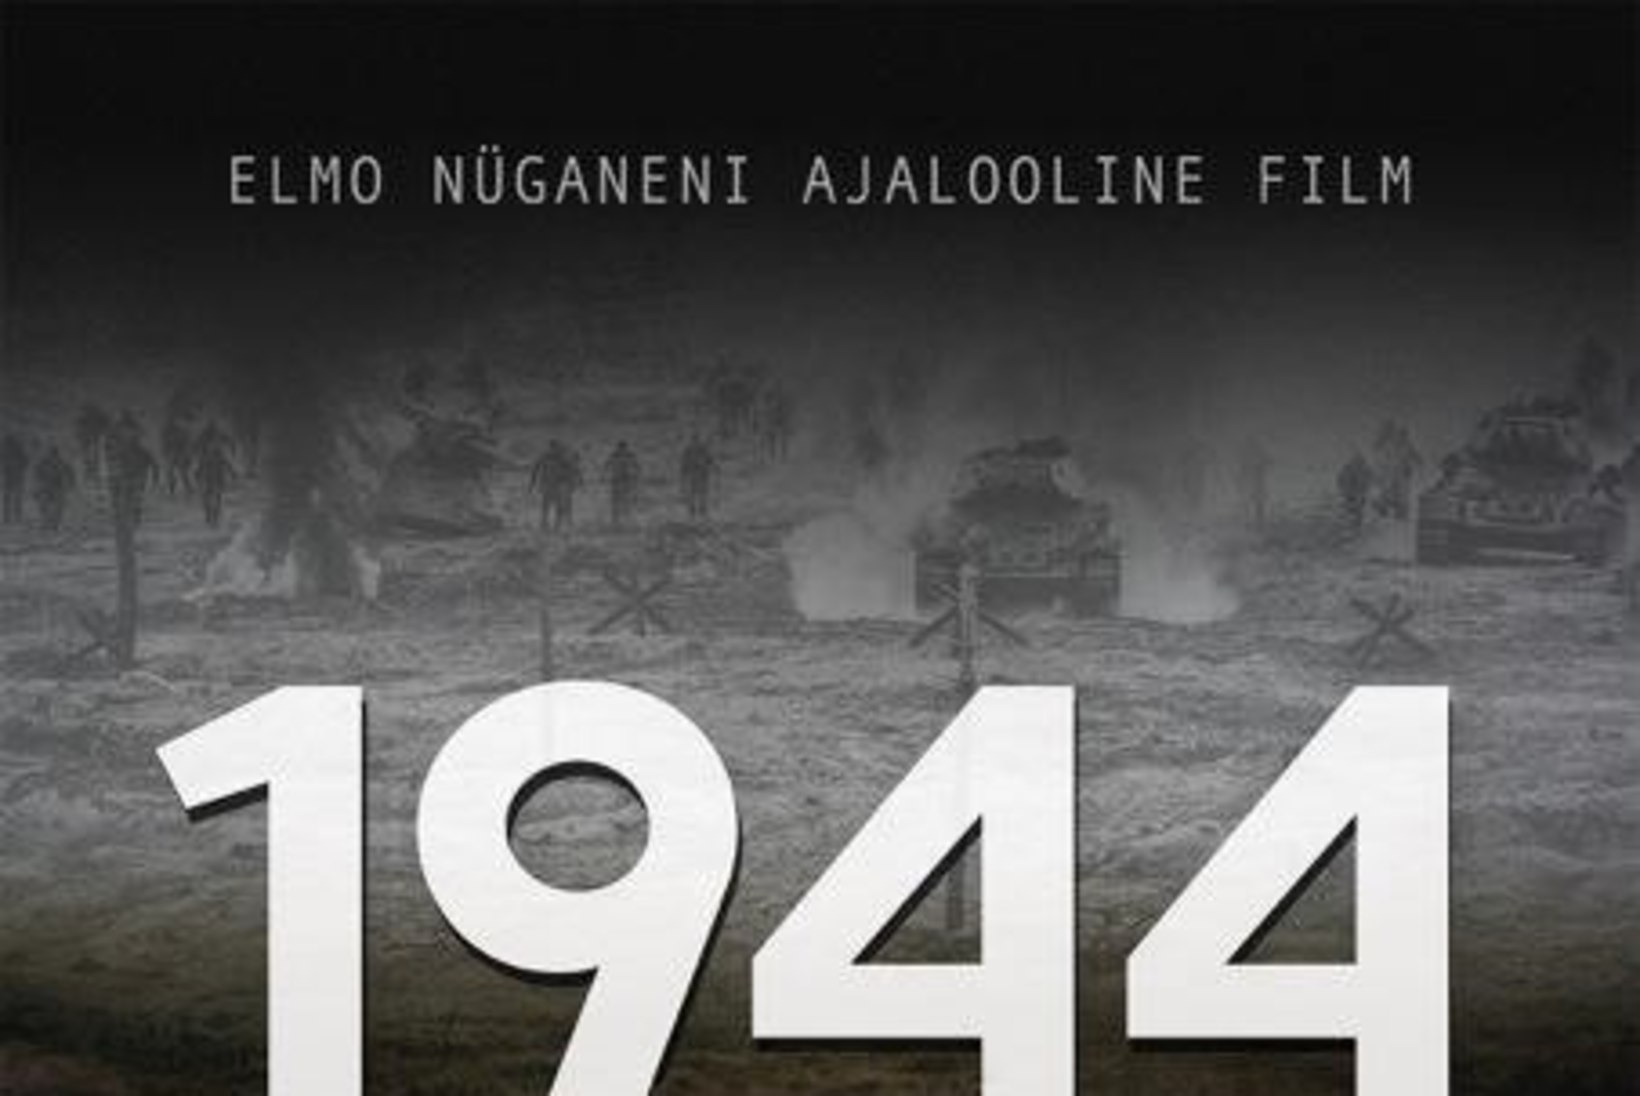 FOTOD VÕTETEST JA TREILER: Nüganeni film "1944" jõuab peagi kinodesse